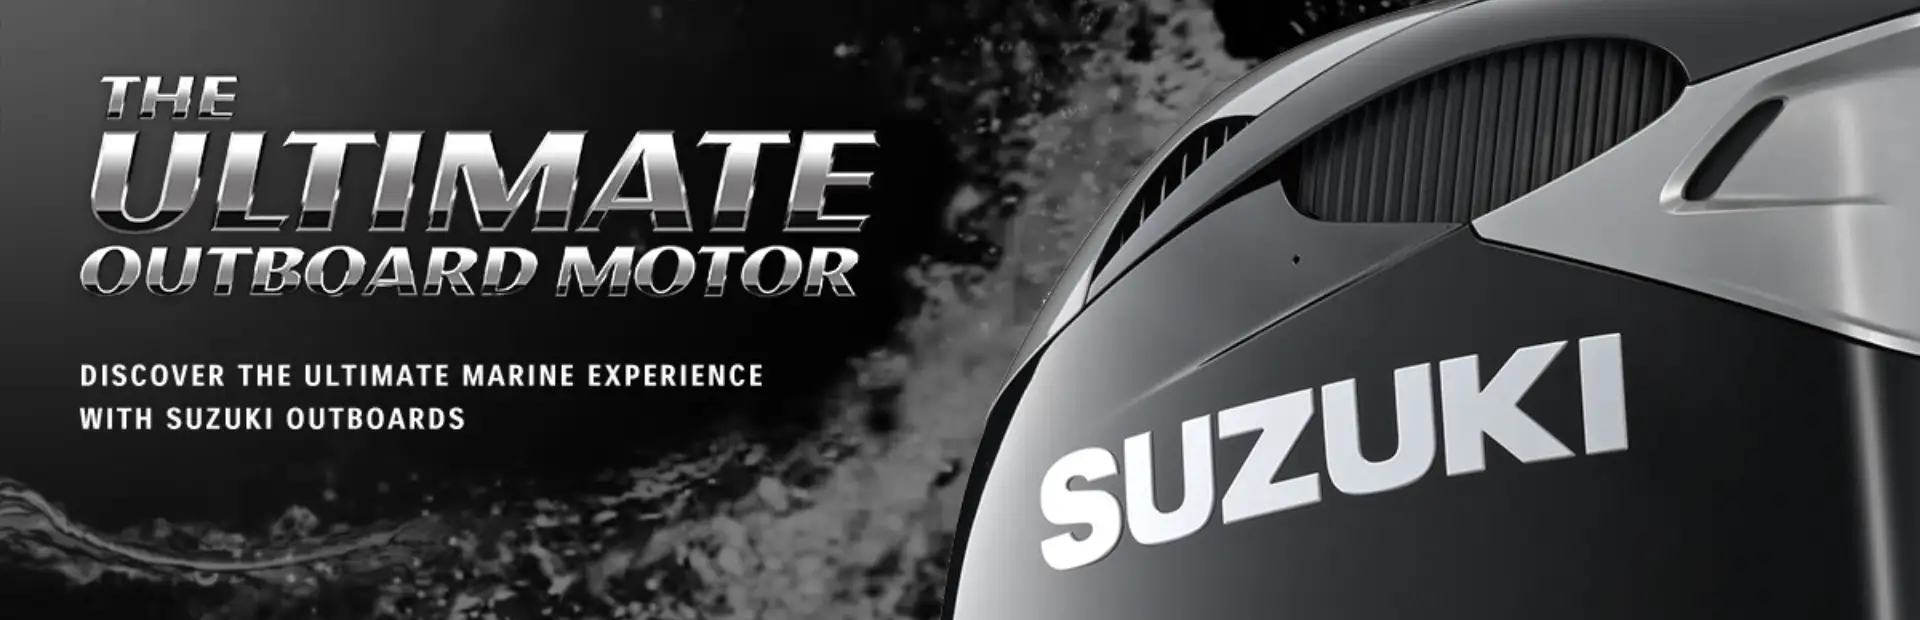 Suzuki Ultimate Outboard Motors